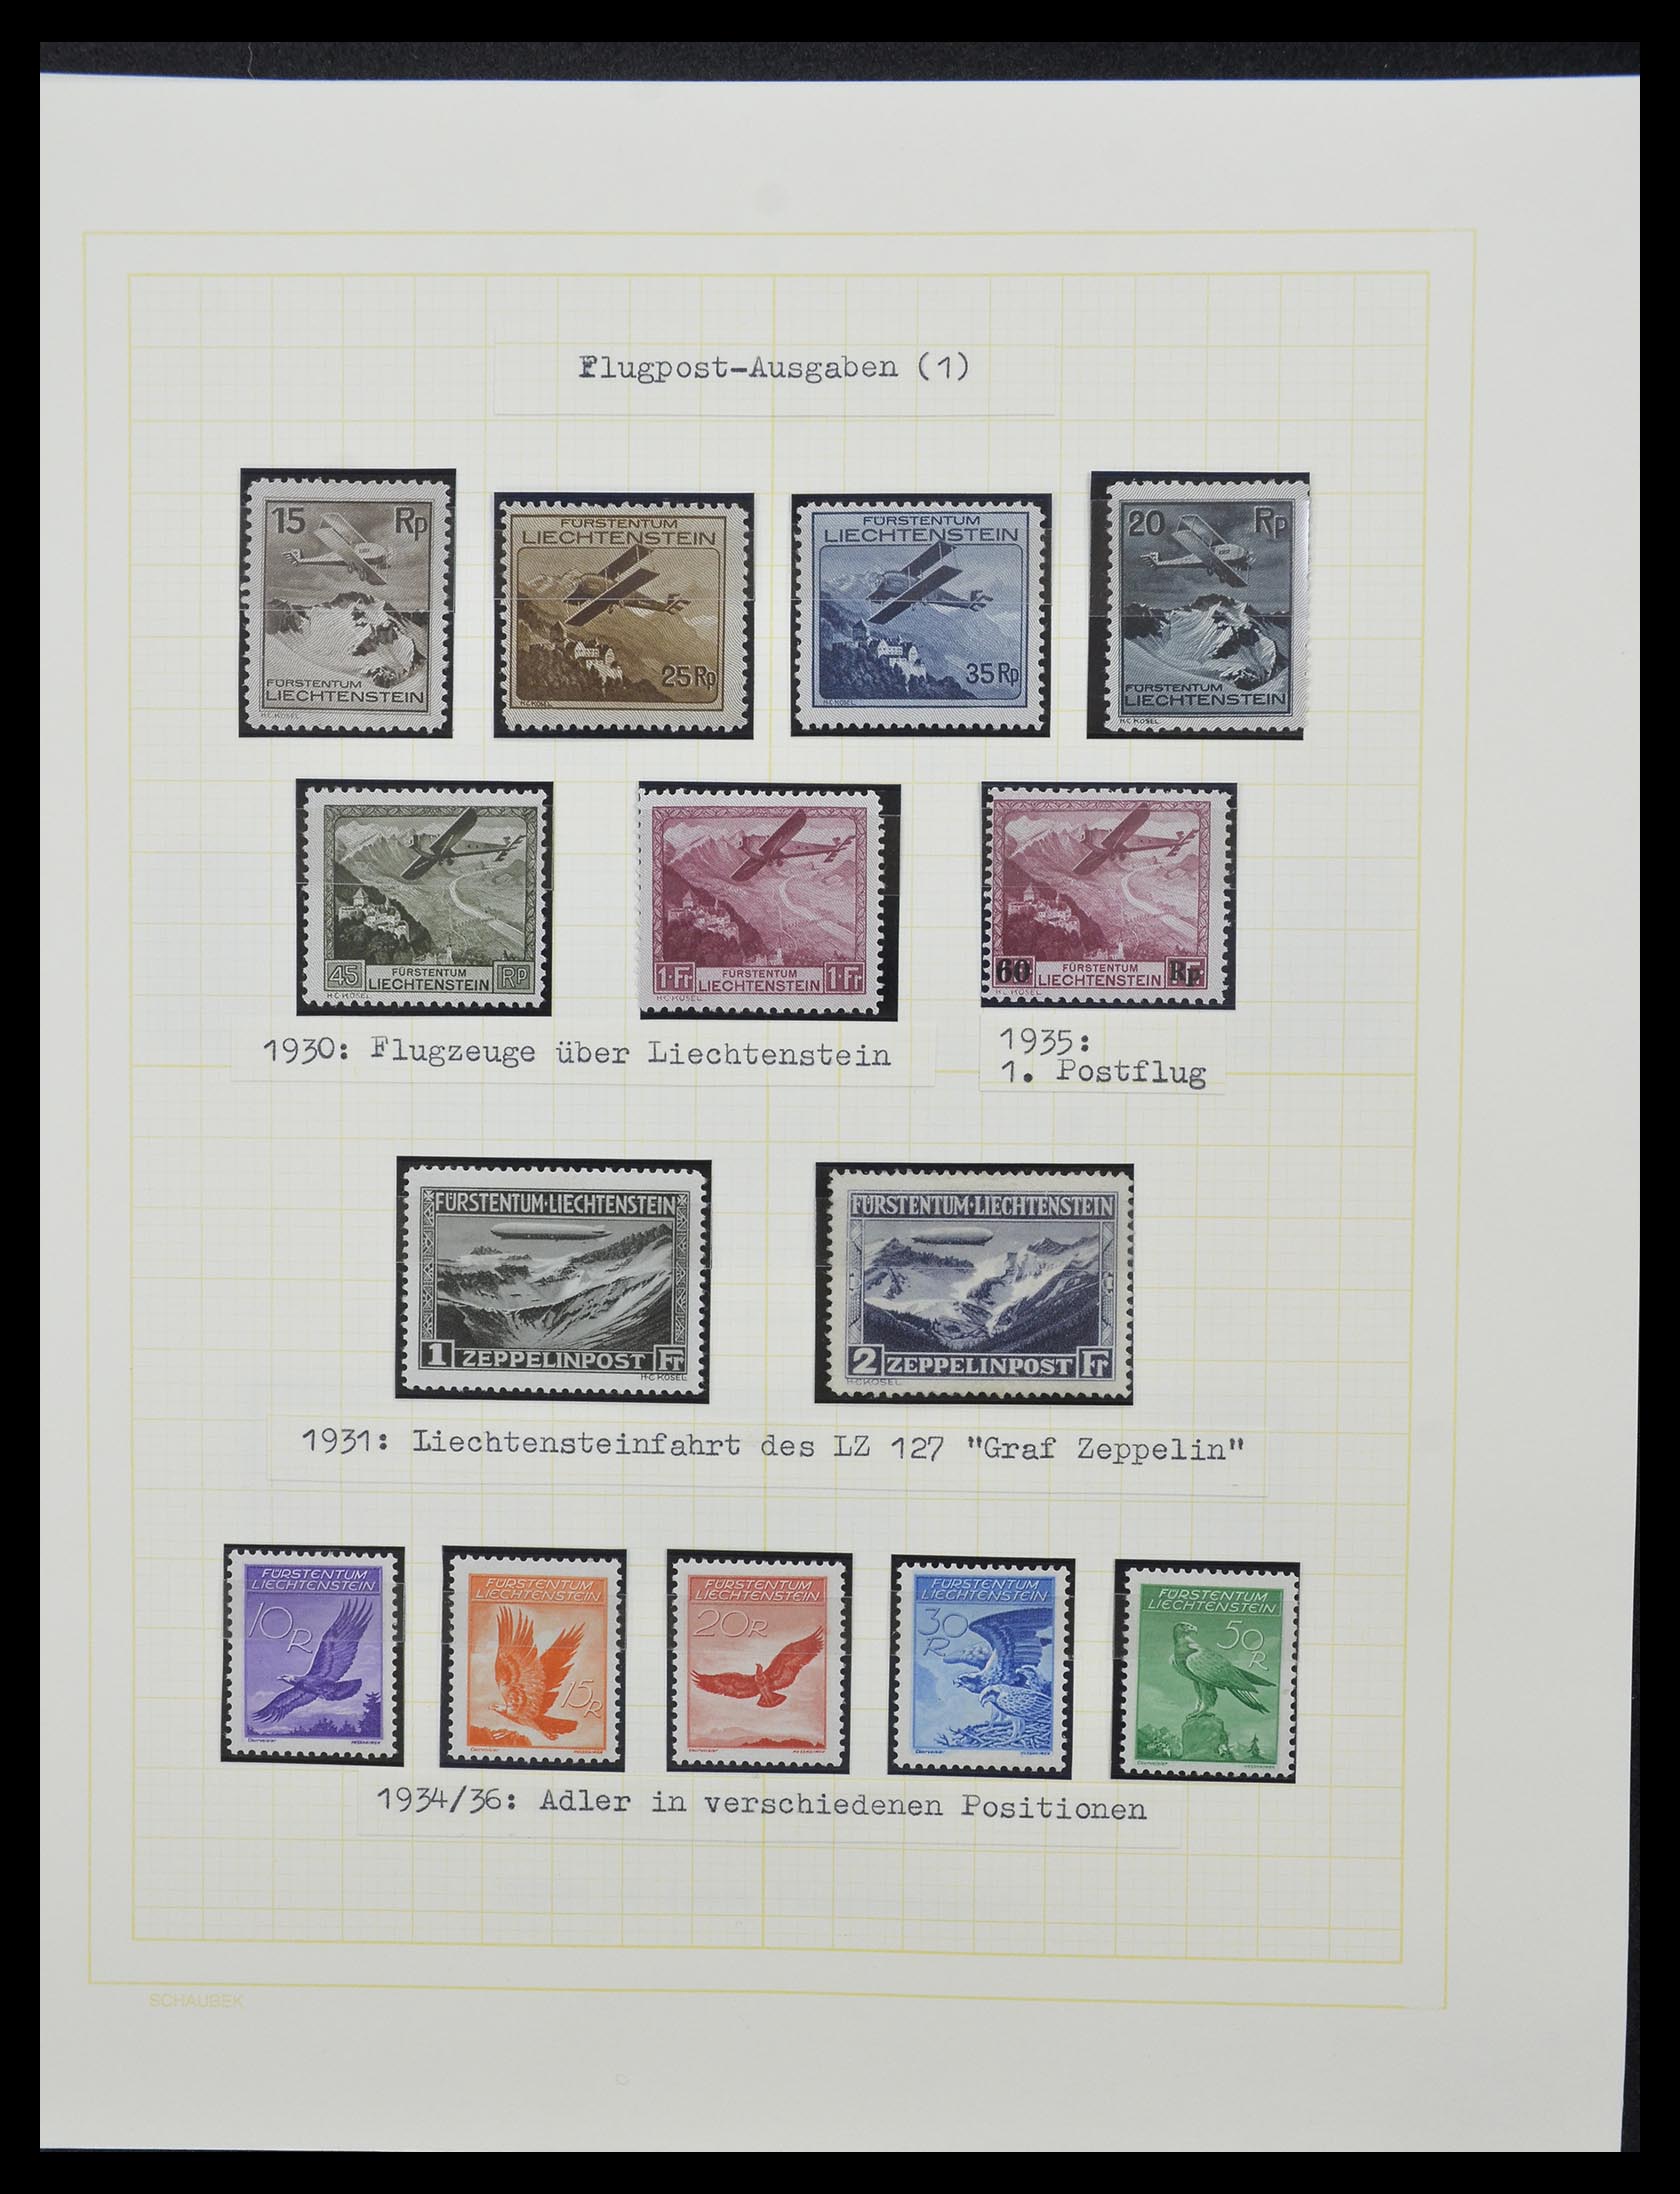 33138 100 - Stamp collection 33138 Liechtenstein 1912-2002.